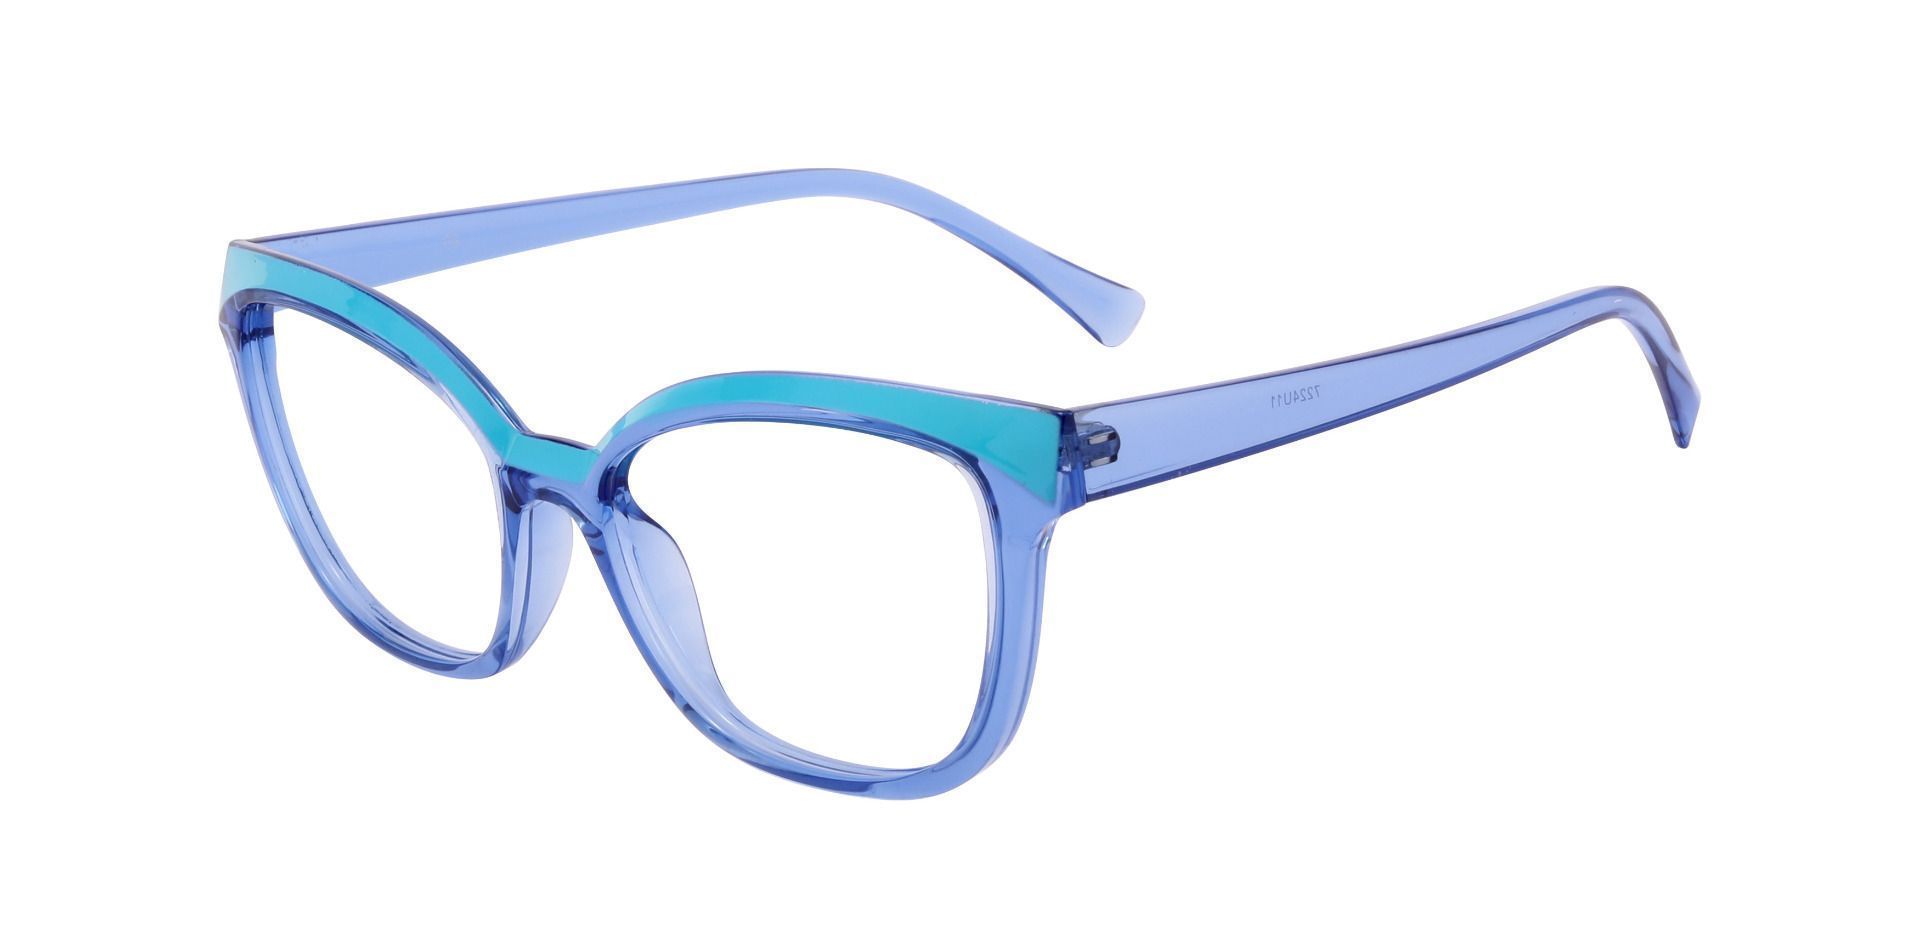 Nashville Cat Eye Prescription Glasses - Blue